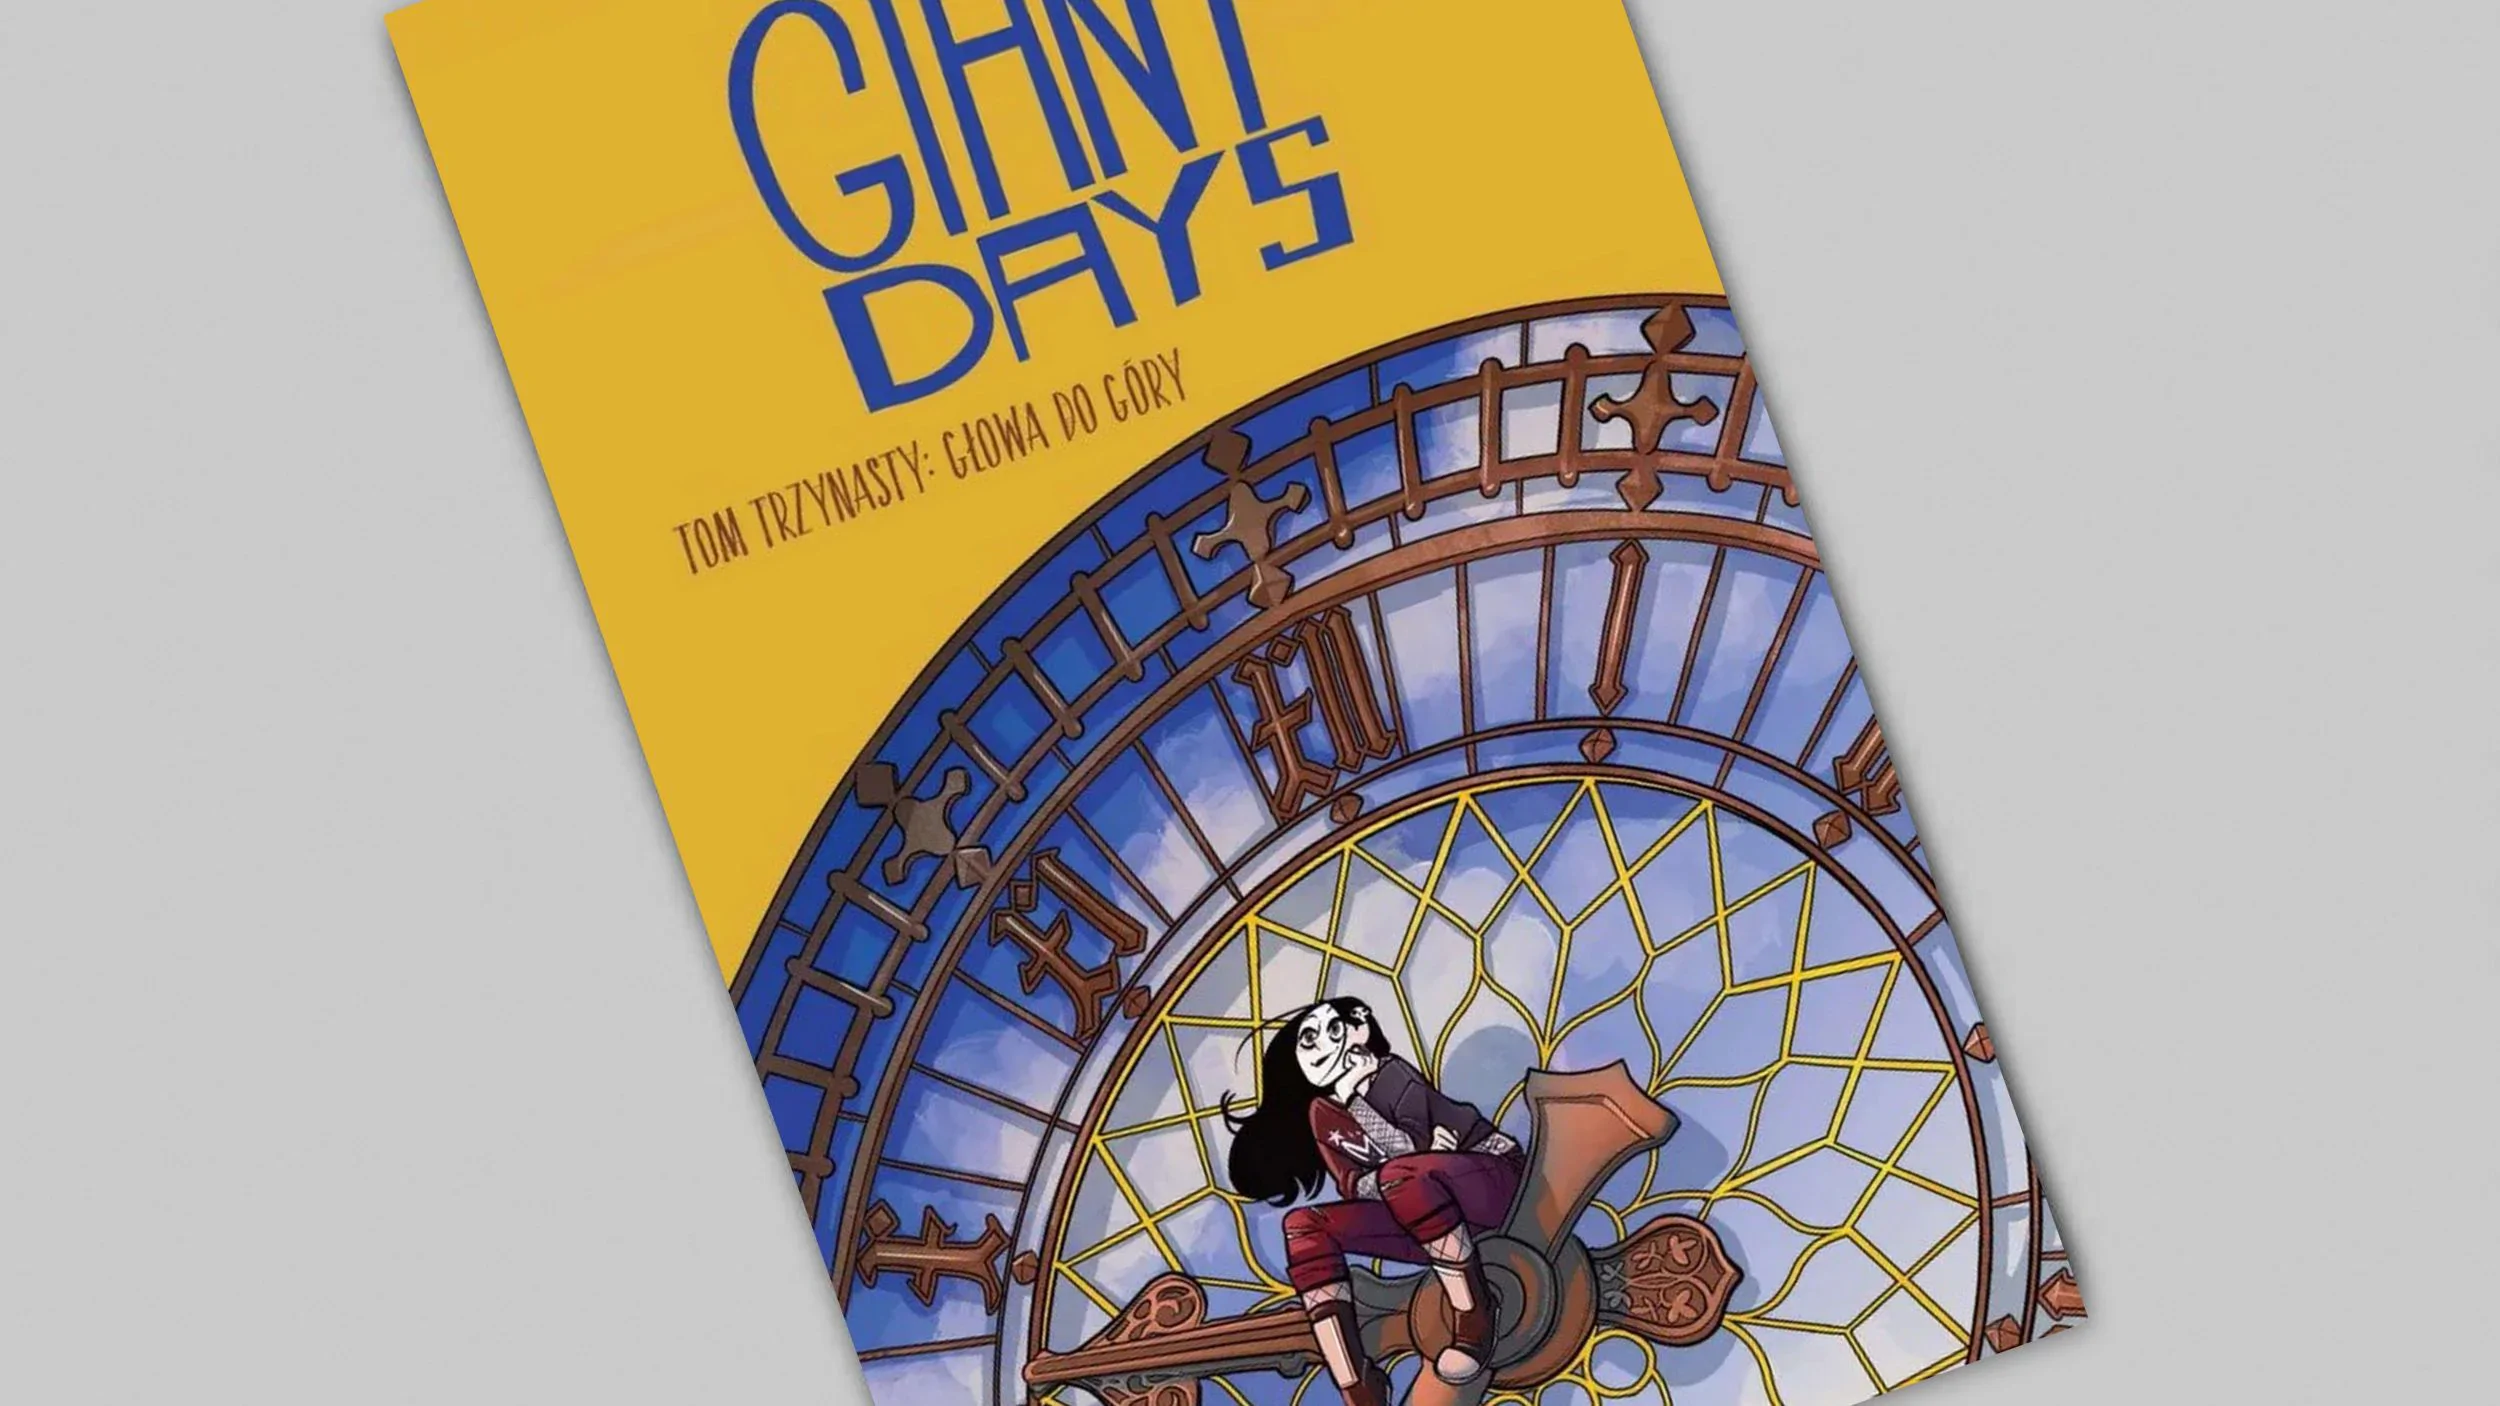 Giant Days tom 13 - Głowa do góry - recenzja komiksu